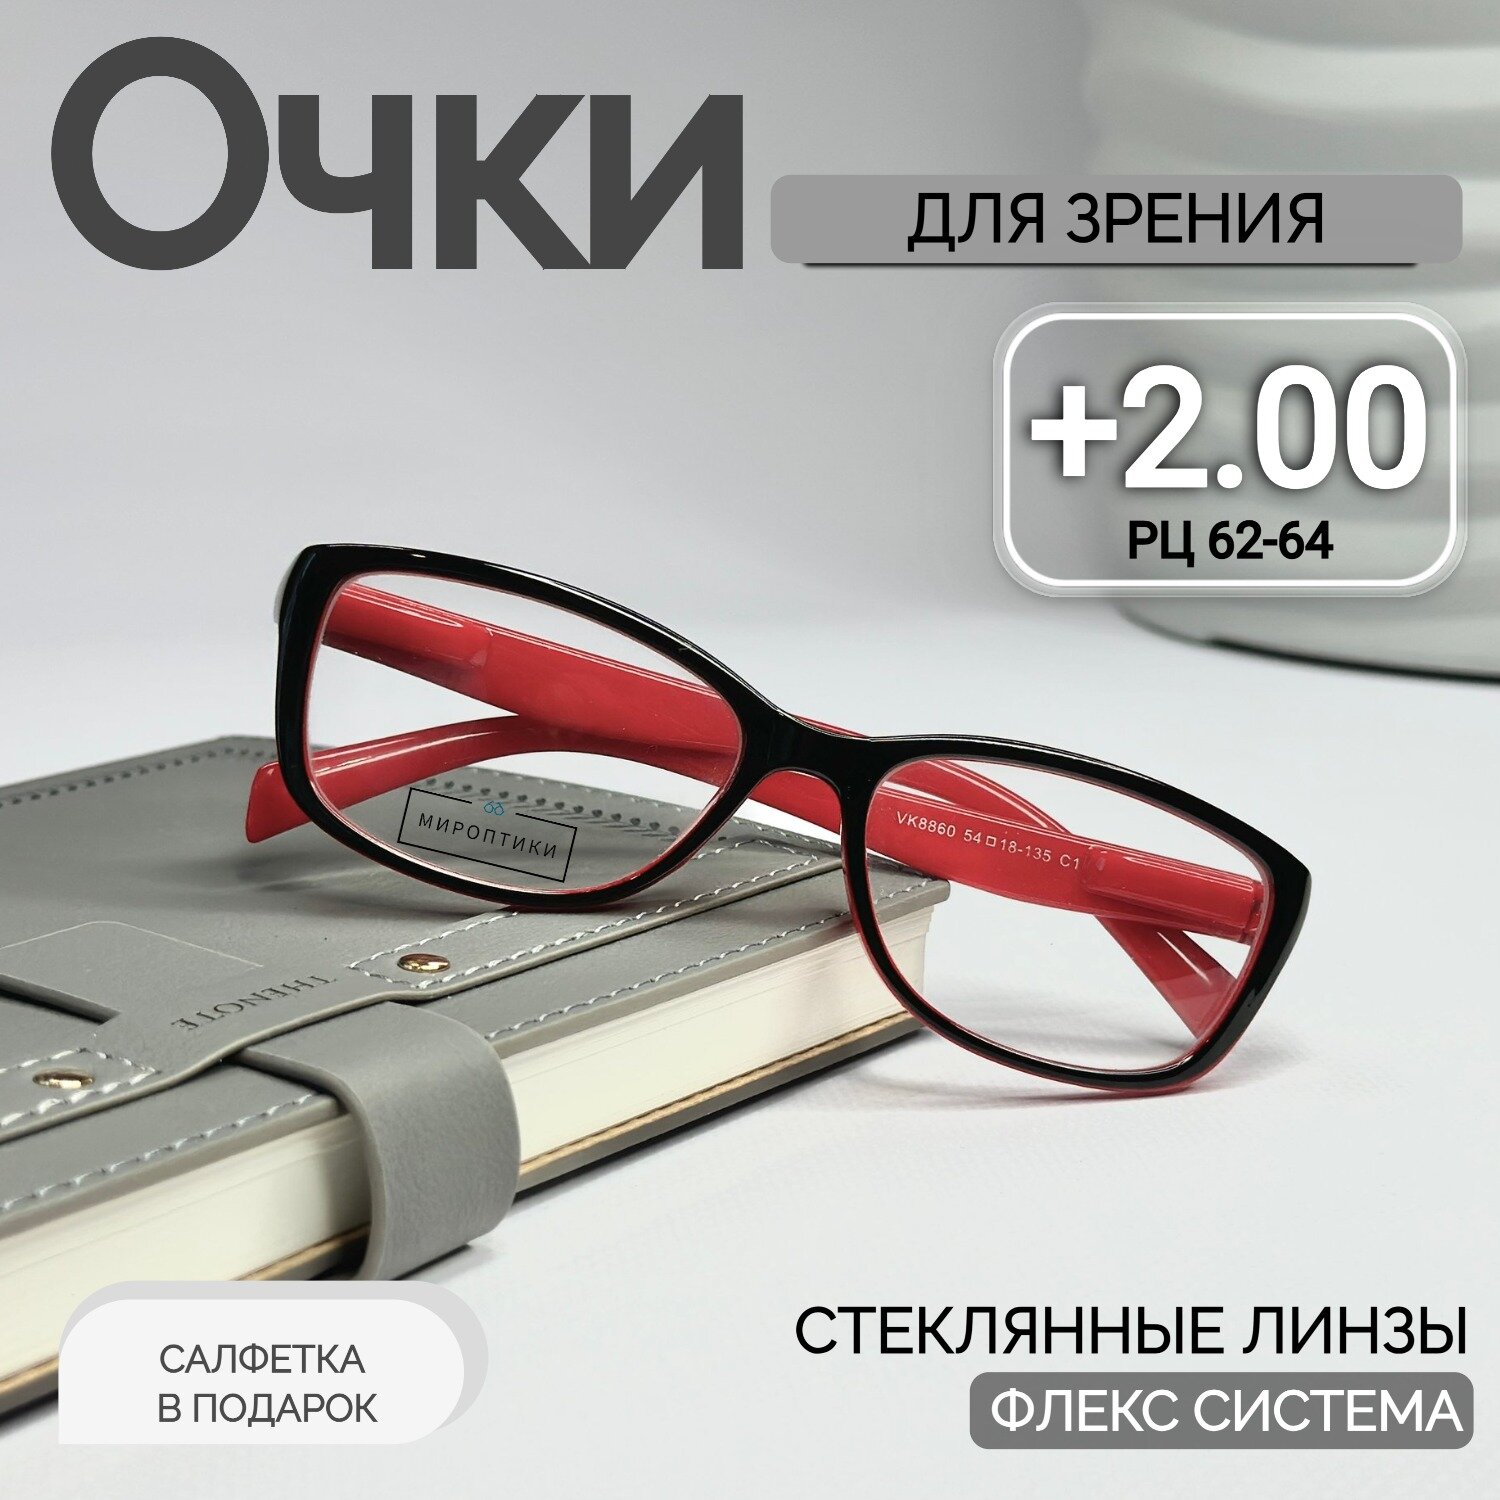 Готовые очки для зрения Fedrov 8860 C1 стеклянные для чтения с диоптриями +2.00